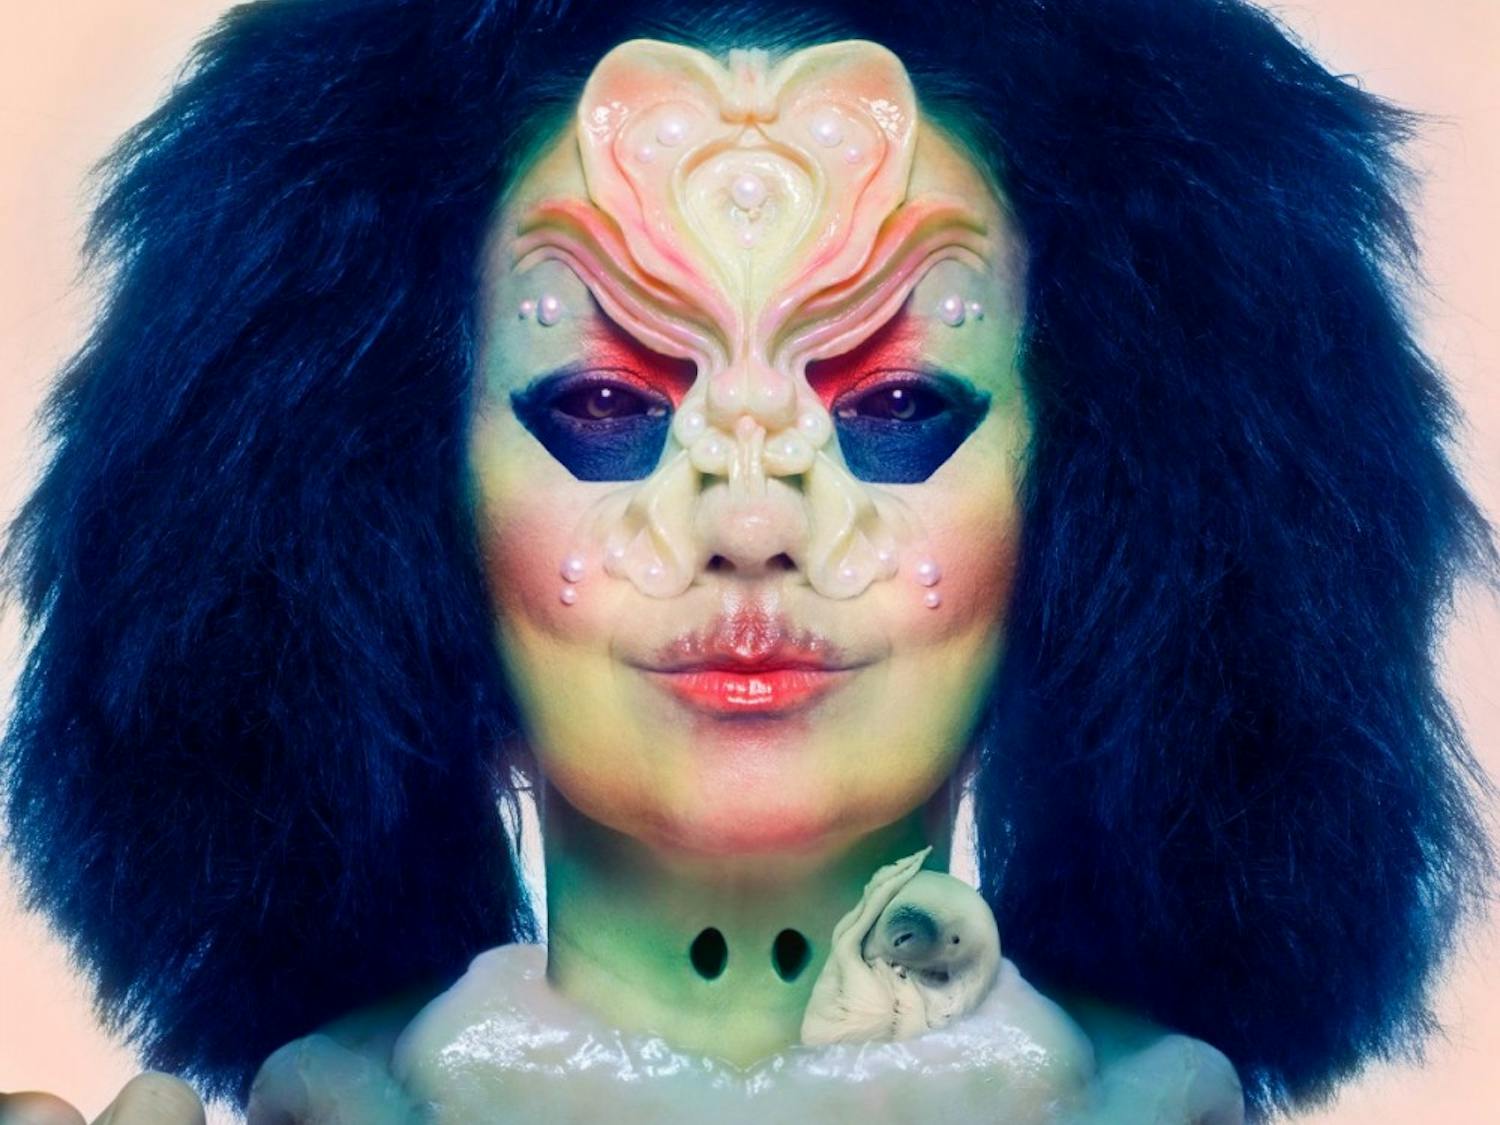 Björk released her ninth studio album, Utopia, this past week.